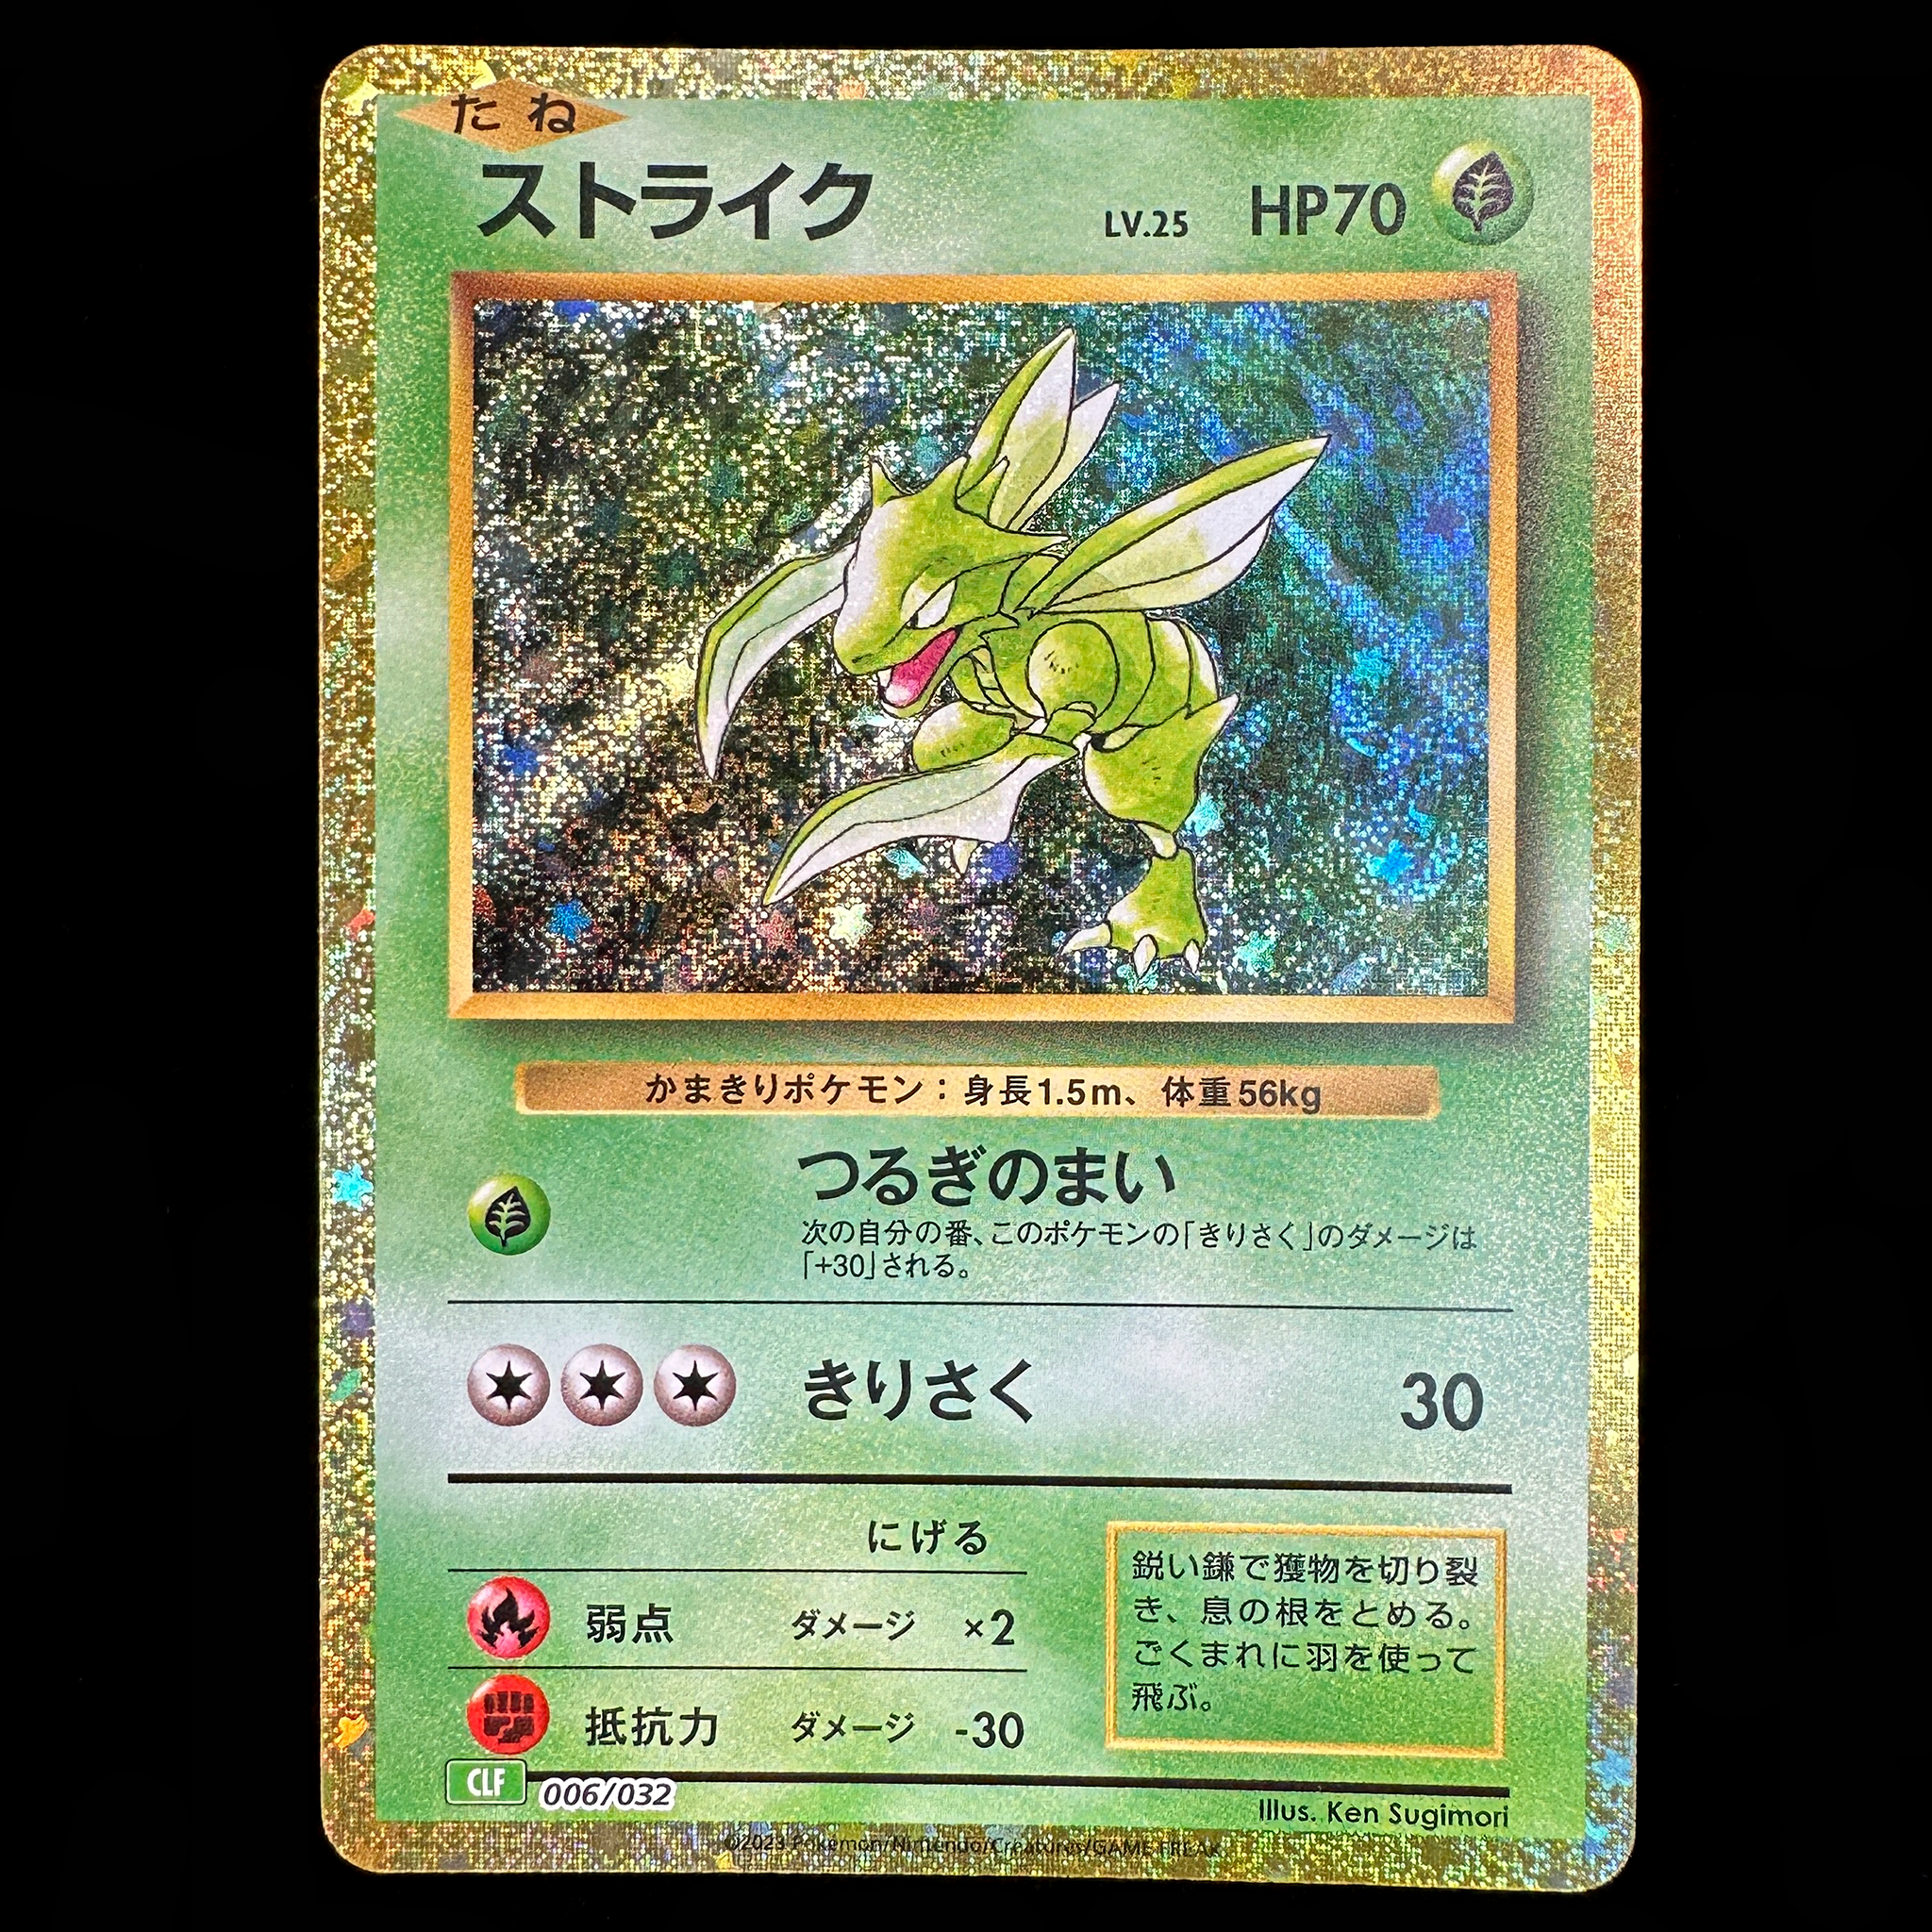 Pokémon Card Game Scarlet & Violet ｢Pokémon Card Game Classic｣  Pokémon Card Game CLF 006/032  Scyther